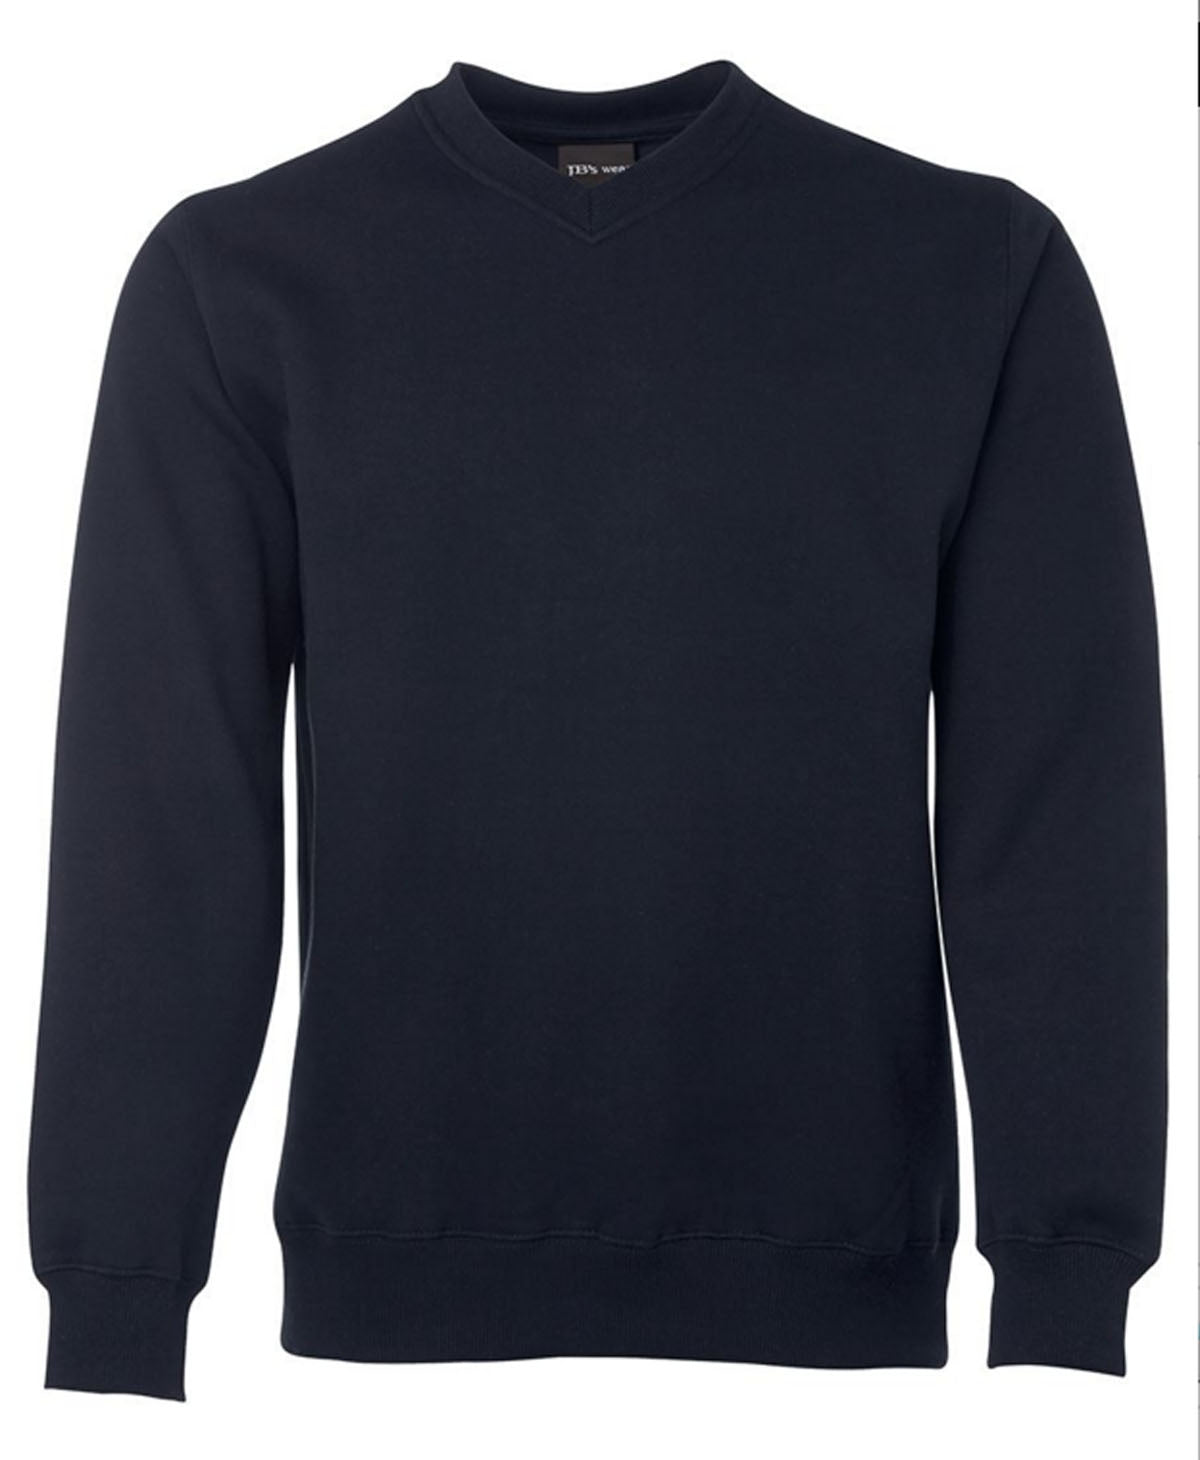 JBs Fleecy Sweater V Neck - BLACK NAVY GREY S Navy Menswear Mature Stock Service by JBs Wear | The Bloke Shop